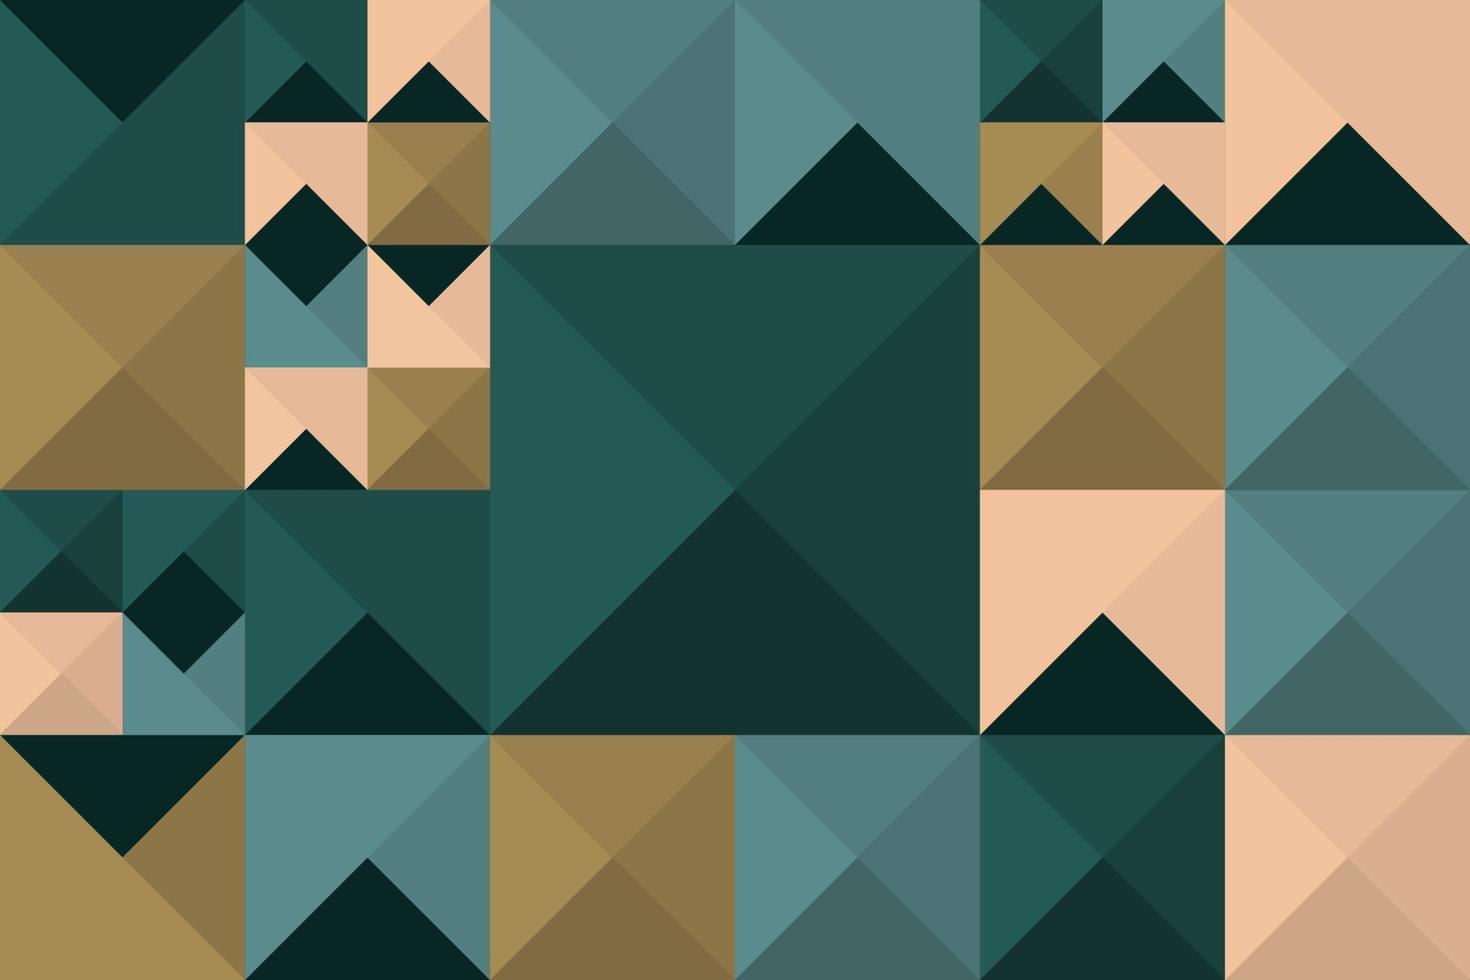 pico abstrato geoemtric triângulo mosaico padrão sem emenda em estilo retrô. composição aleatória de fundo tileable de formas de geometria vetor